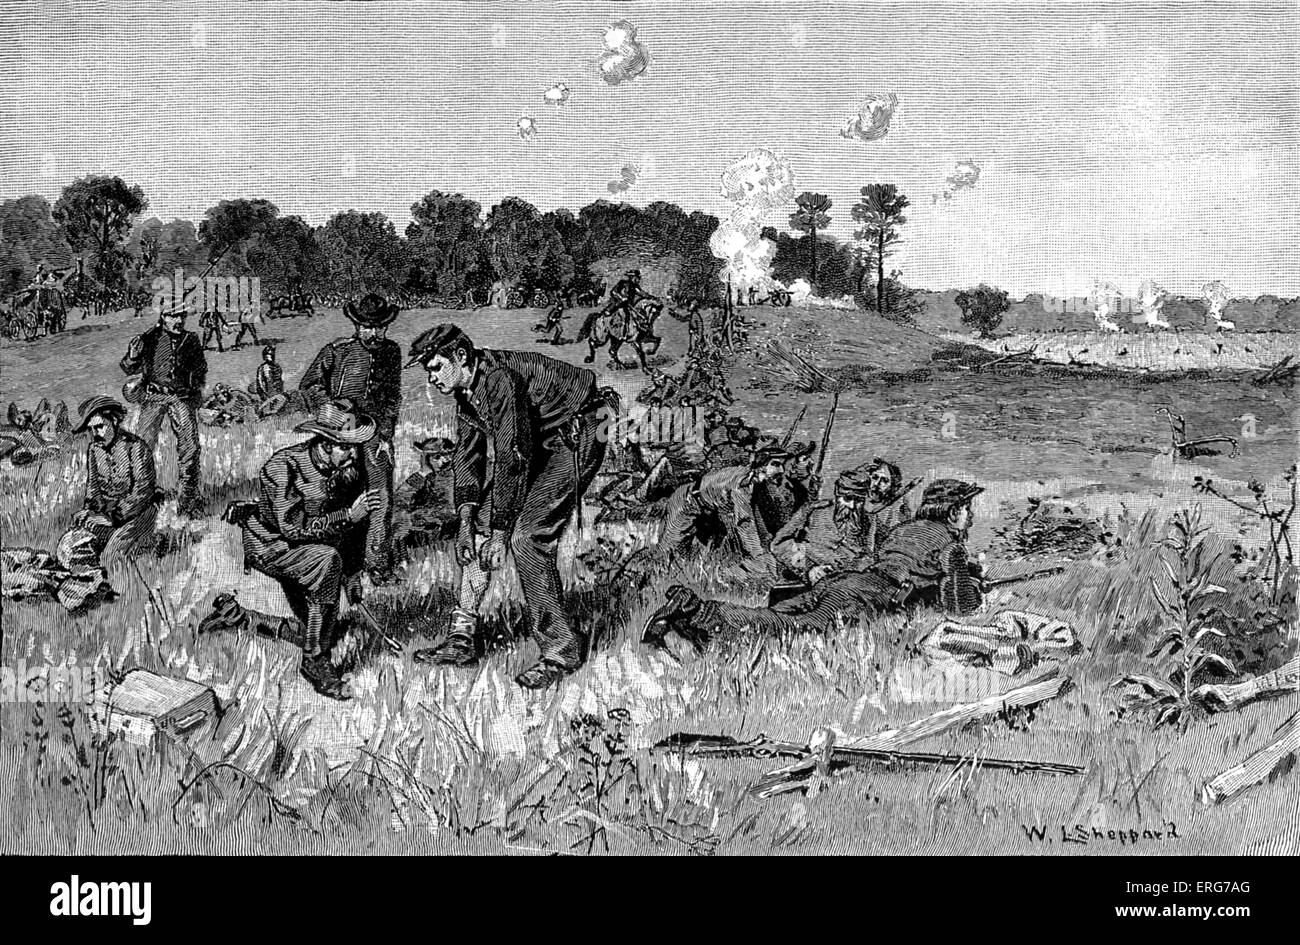 Línea confederado esperando órdenes en el desierto por W. L. Sheppard. La batalla del desierto, librada entre el 5 y el 7 de mayo Foto de stock